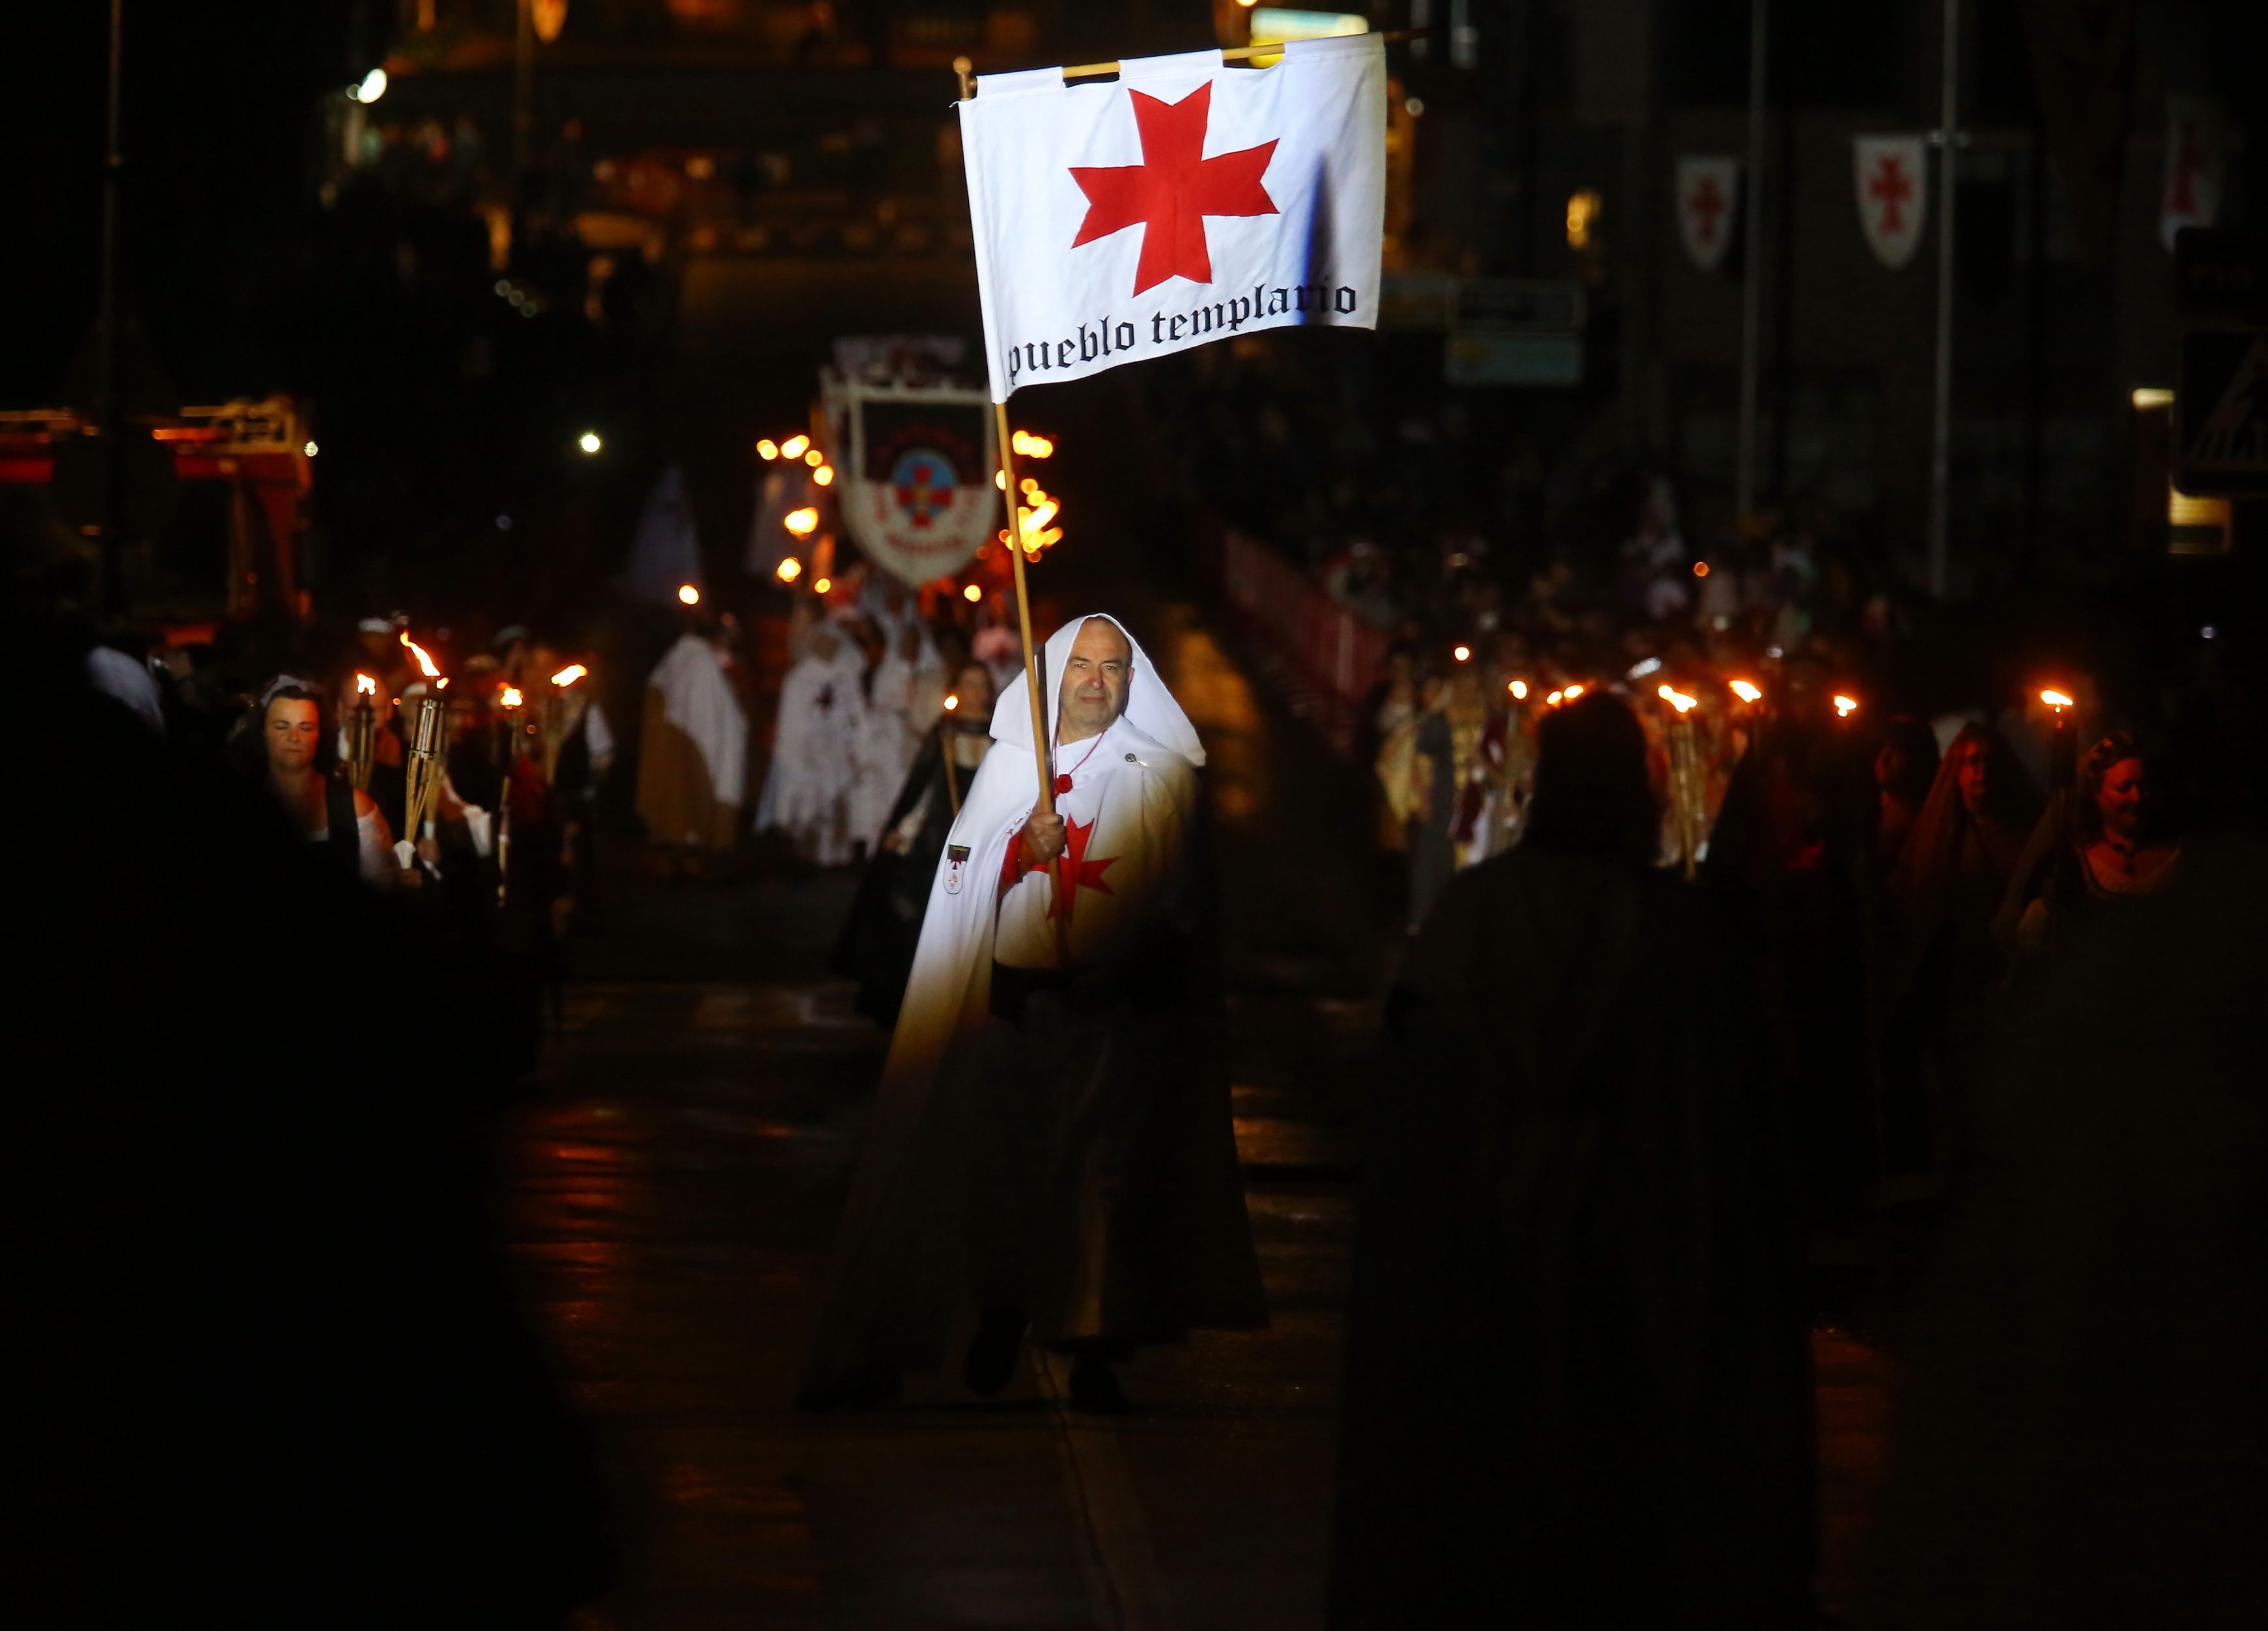 El desfile de la Noche Templaria en una imagen de archivo. | CÉSAR SÁNCHEZ (ICAL)